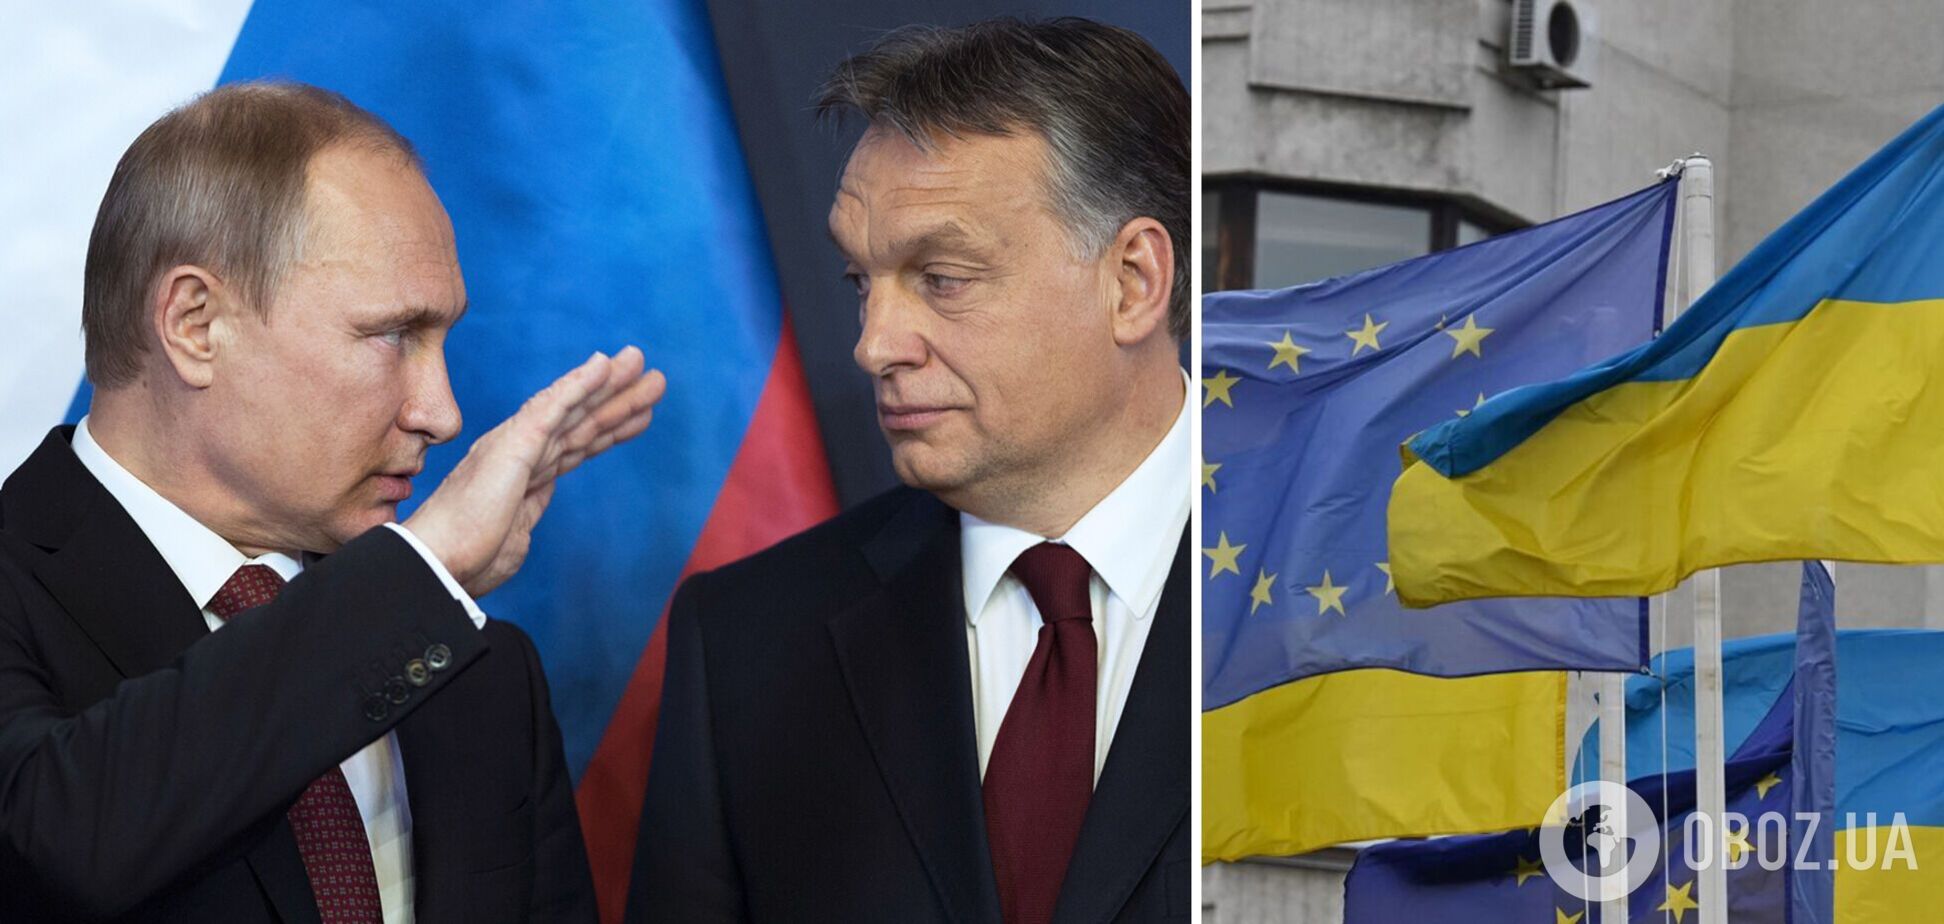 ЕС давит на Венгрию из-за Украины